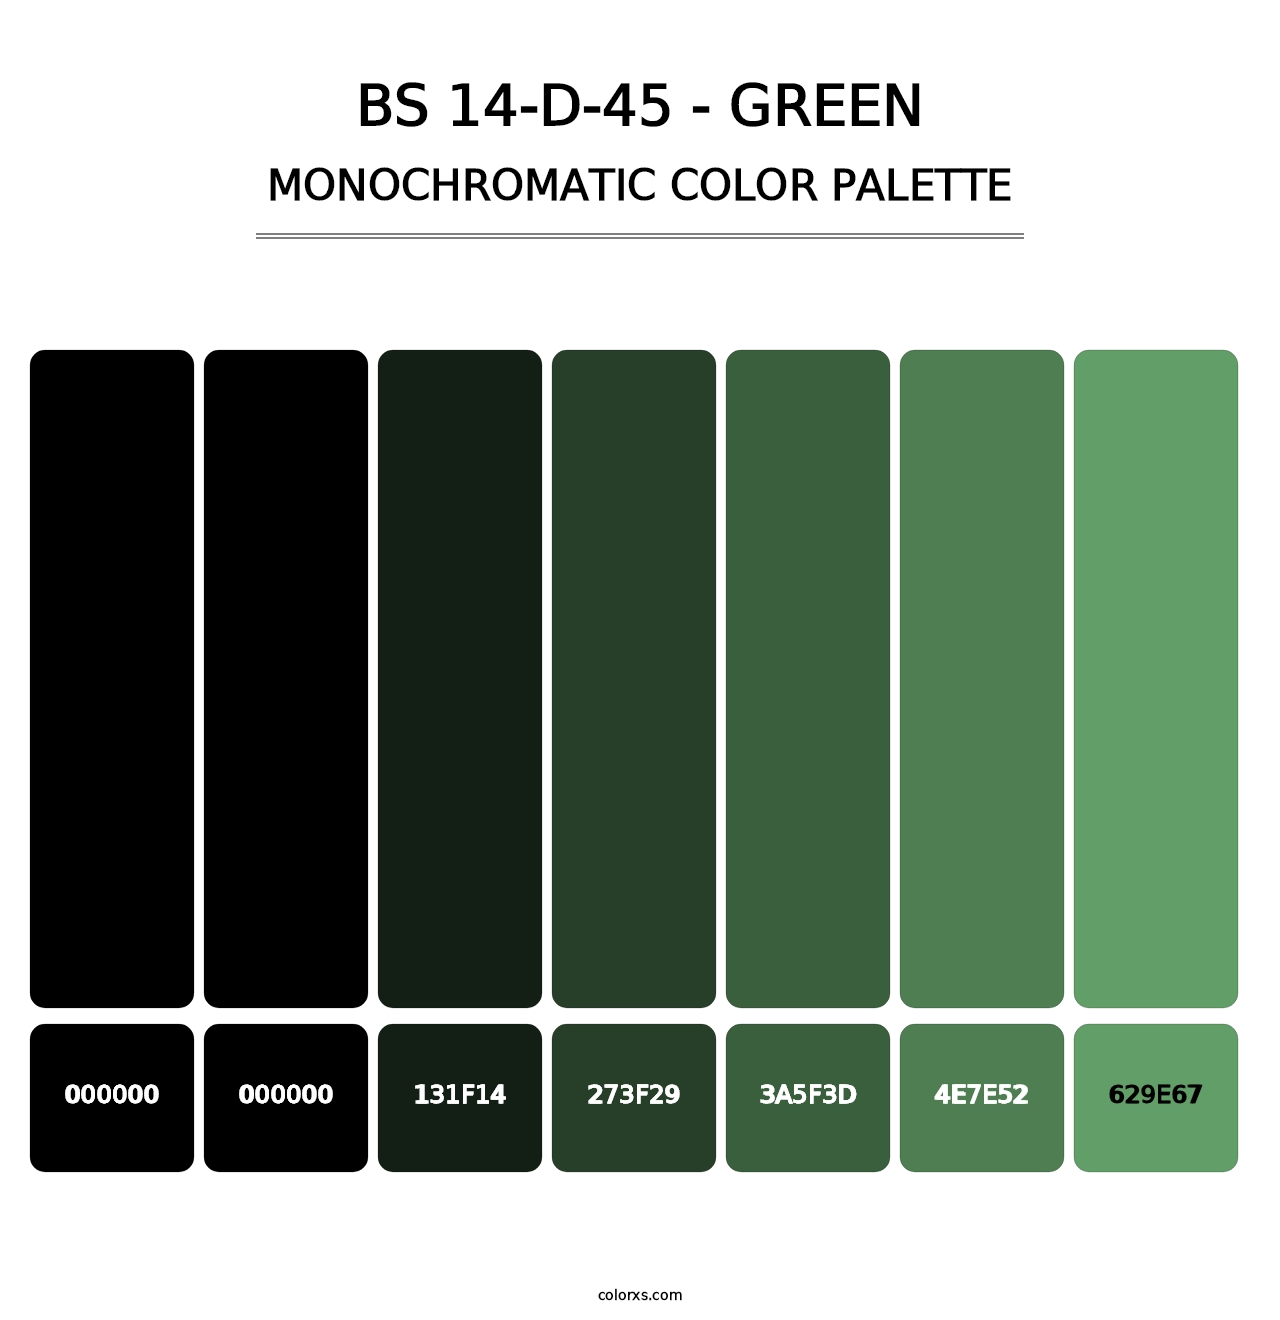 BS 14-D-45 - Green - Monochromatic Color Palette